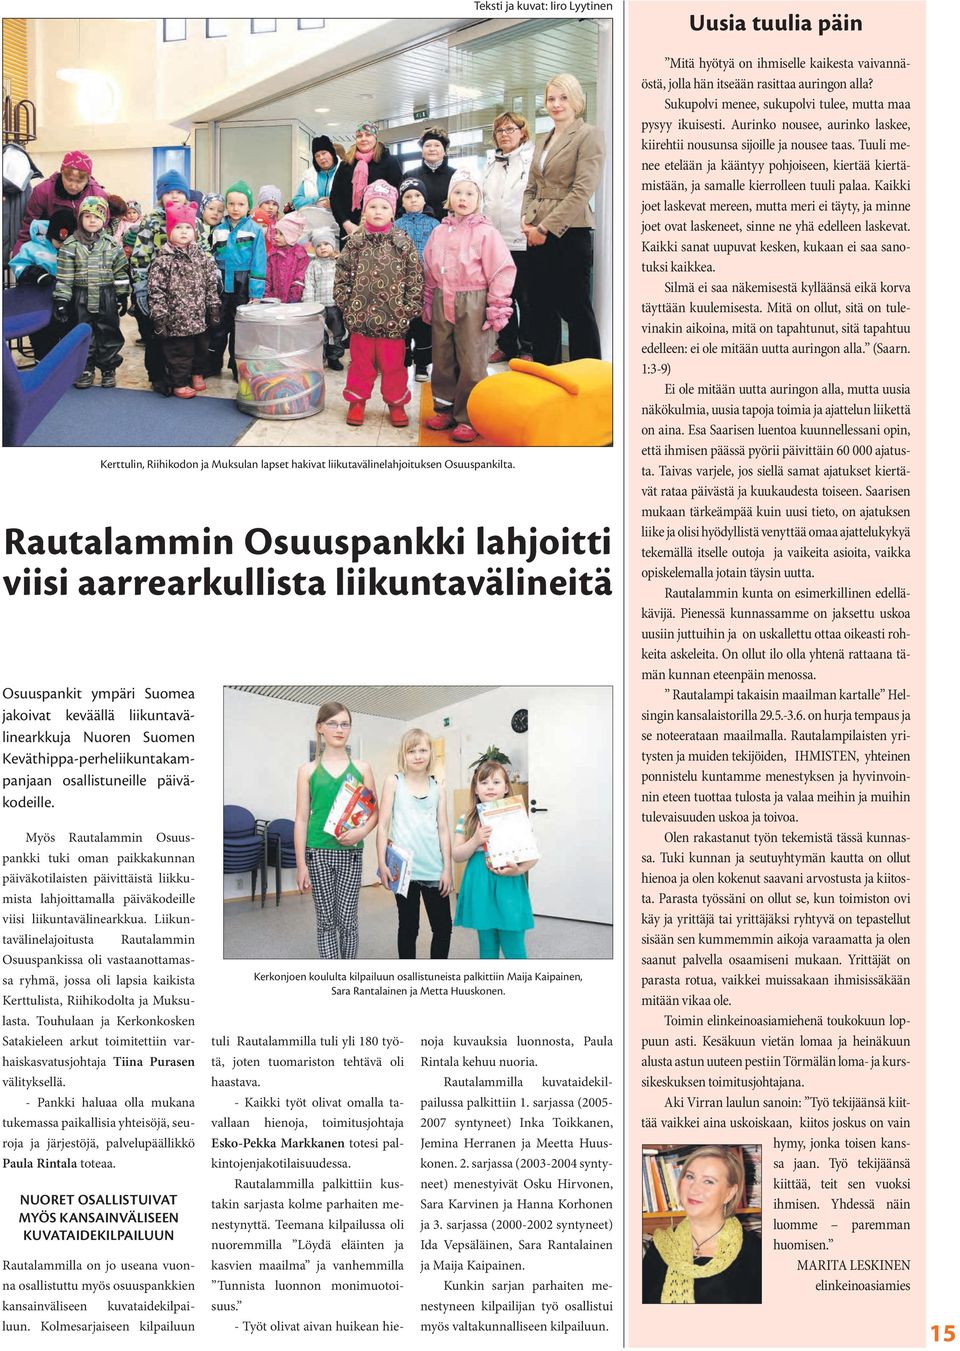 Liikuntavälinelajoitusta Rautalammin Osuuspankissa oli vastaanottamassa ryhmä, jossa oli lapsia kaikista Kerttulista, Riihikodolta ja Muksulasta.